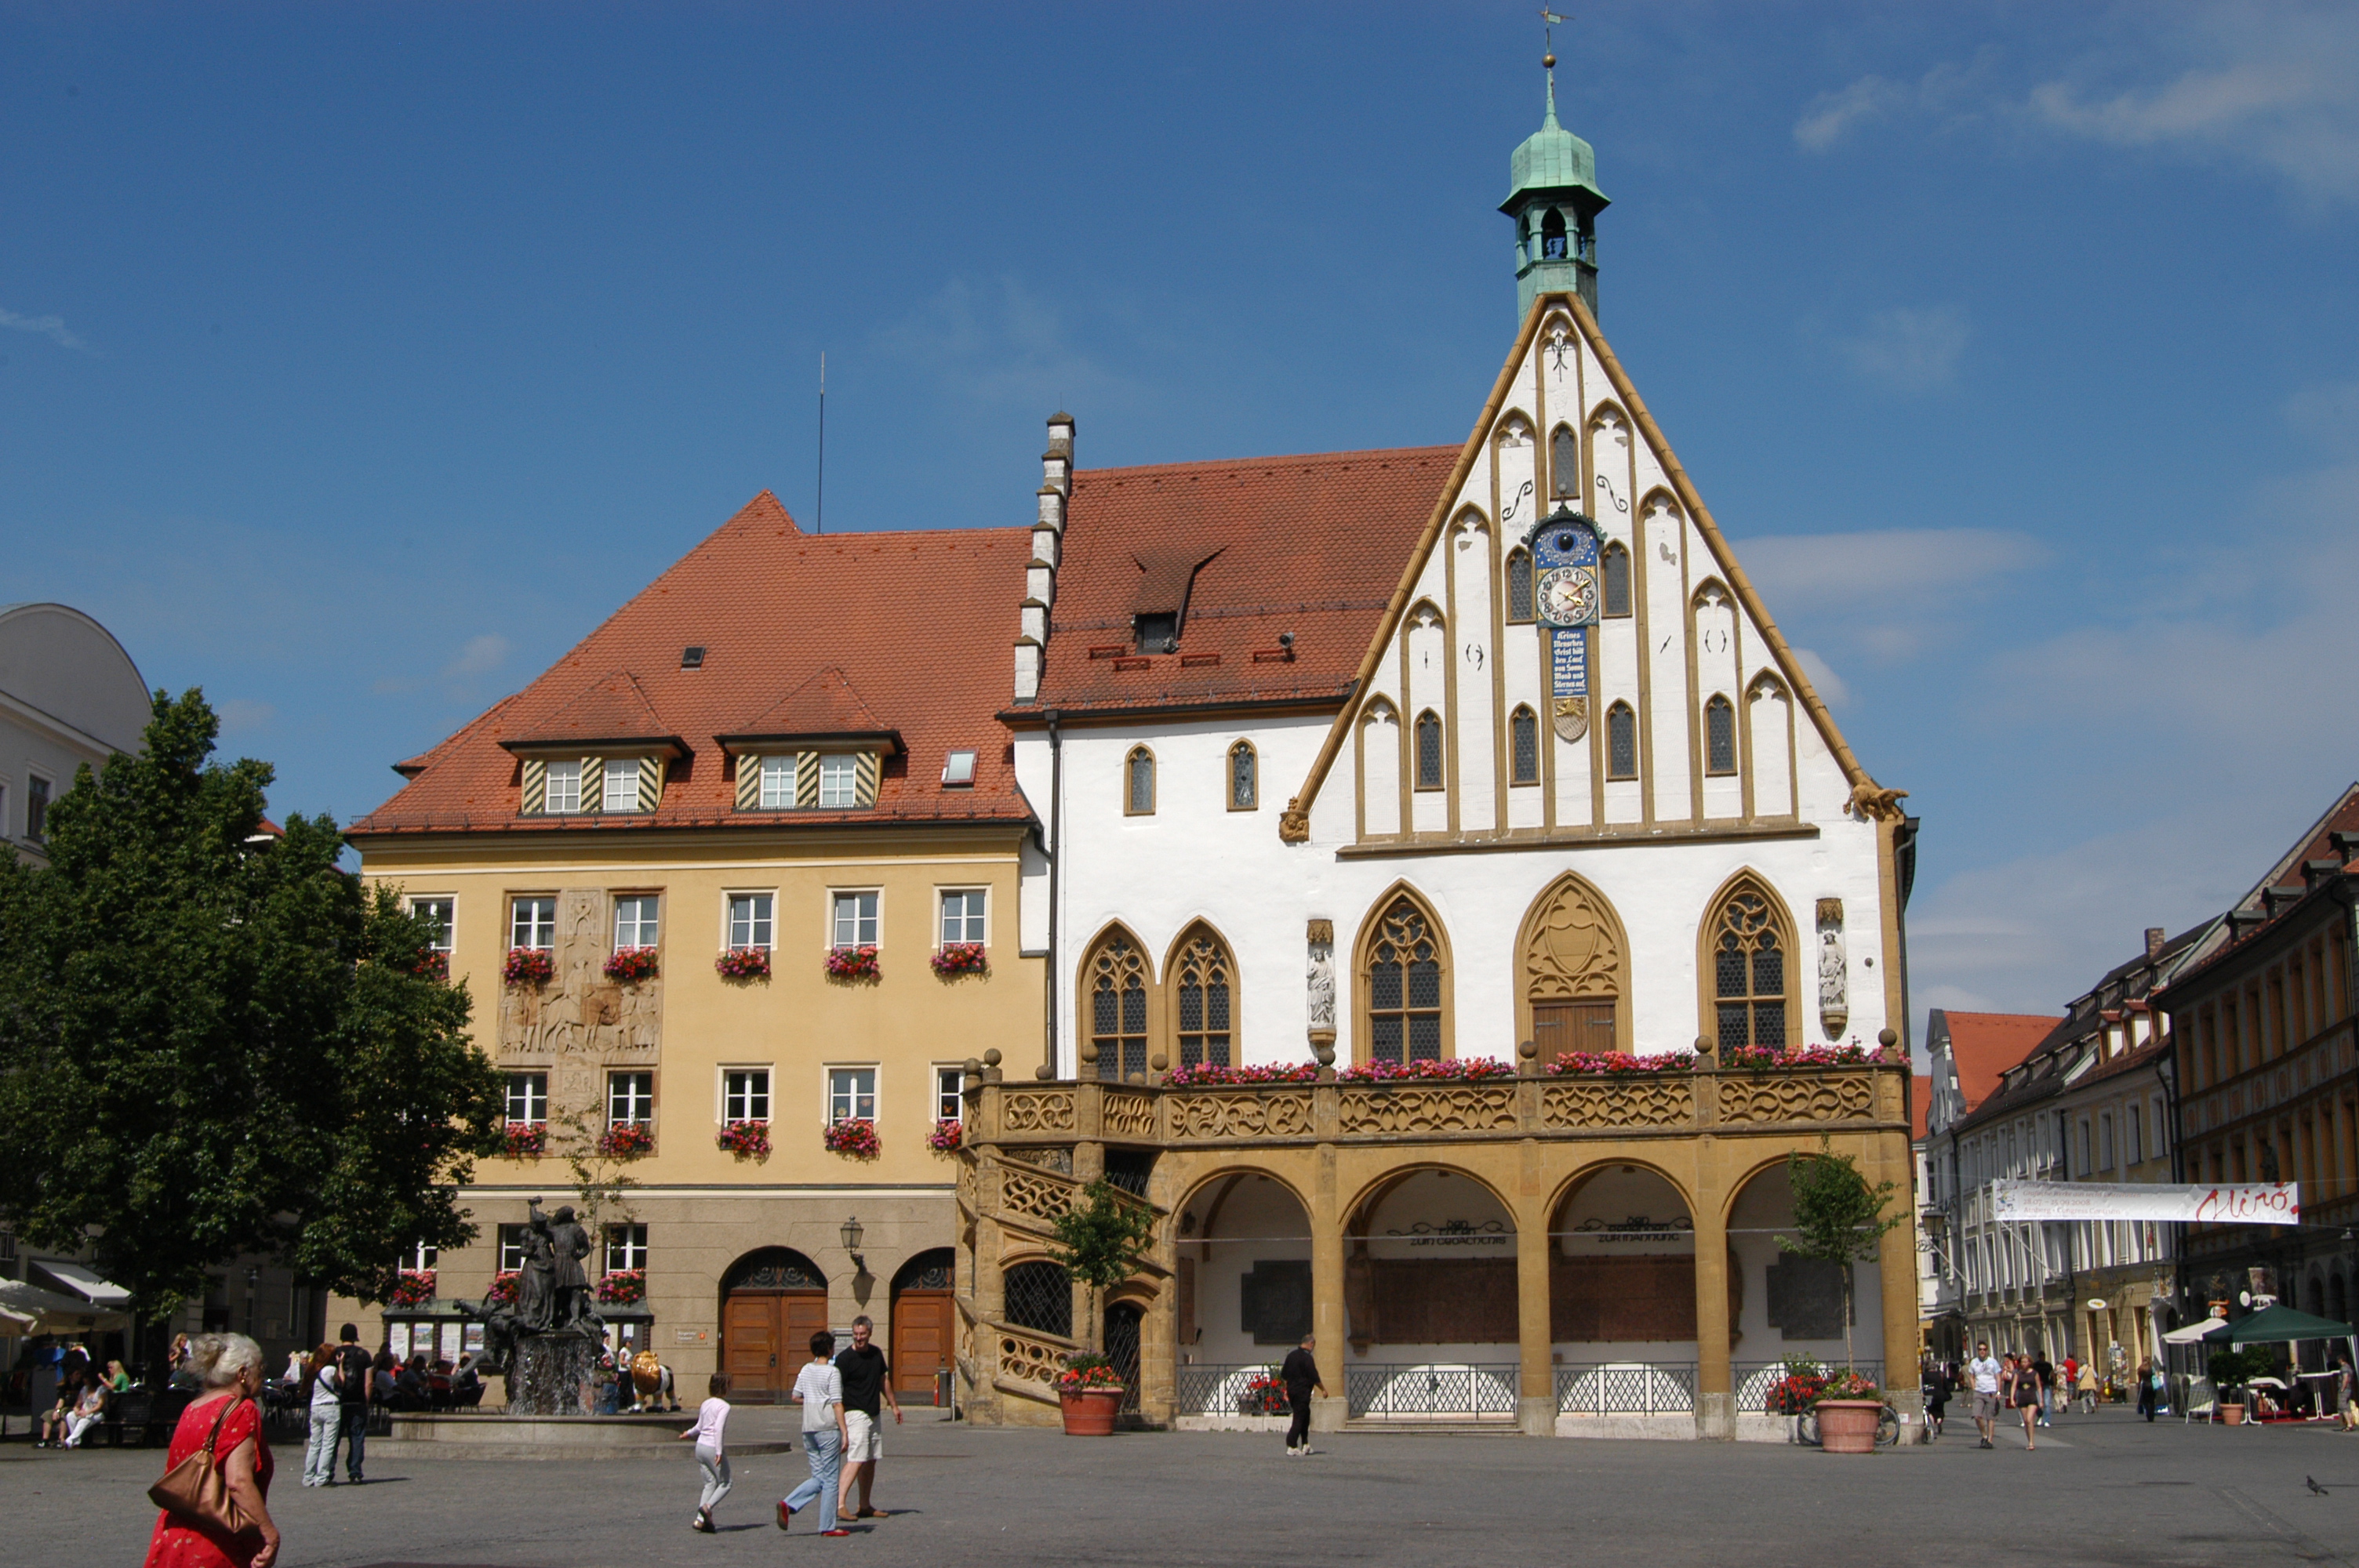 1348 erstmals schriftlich erwähnt, präsentiert sich der historische Teil des Rathauses in Amberg nach mehreren Umbaumaßnahmen im Stil der Spätgotik und der Renaissance und prägt das gesamte Erscheinungsbild des Marktplatzes der oberpfälzer Stadt.